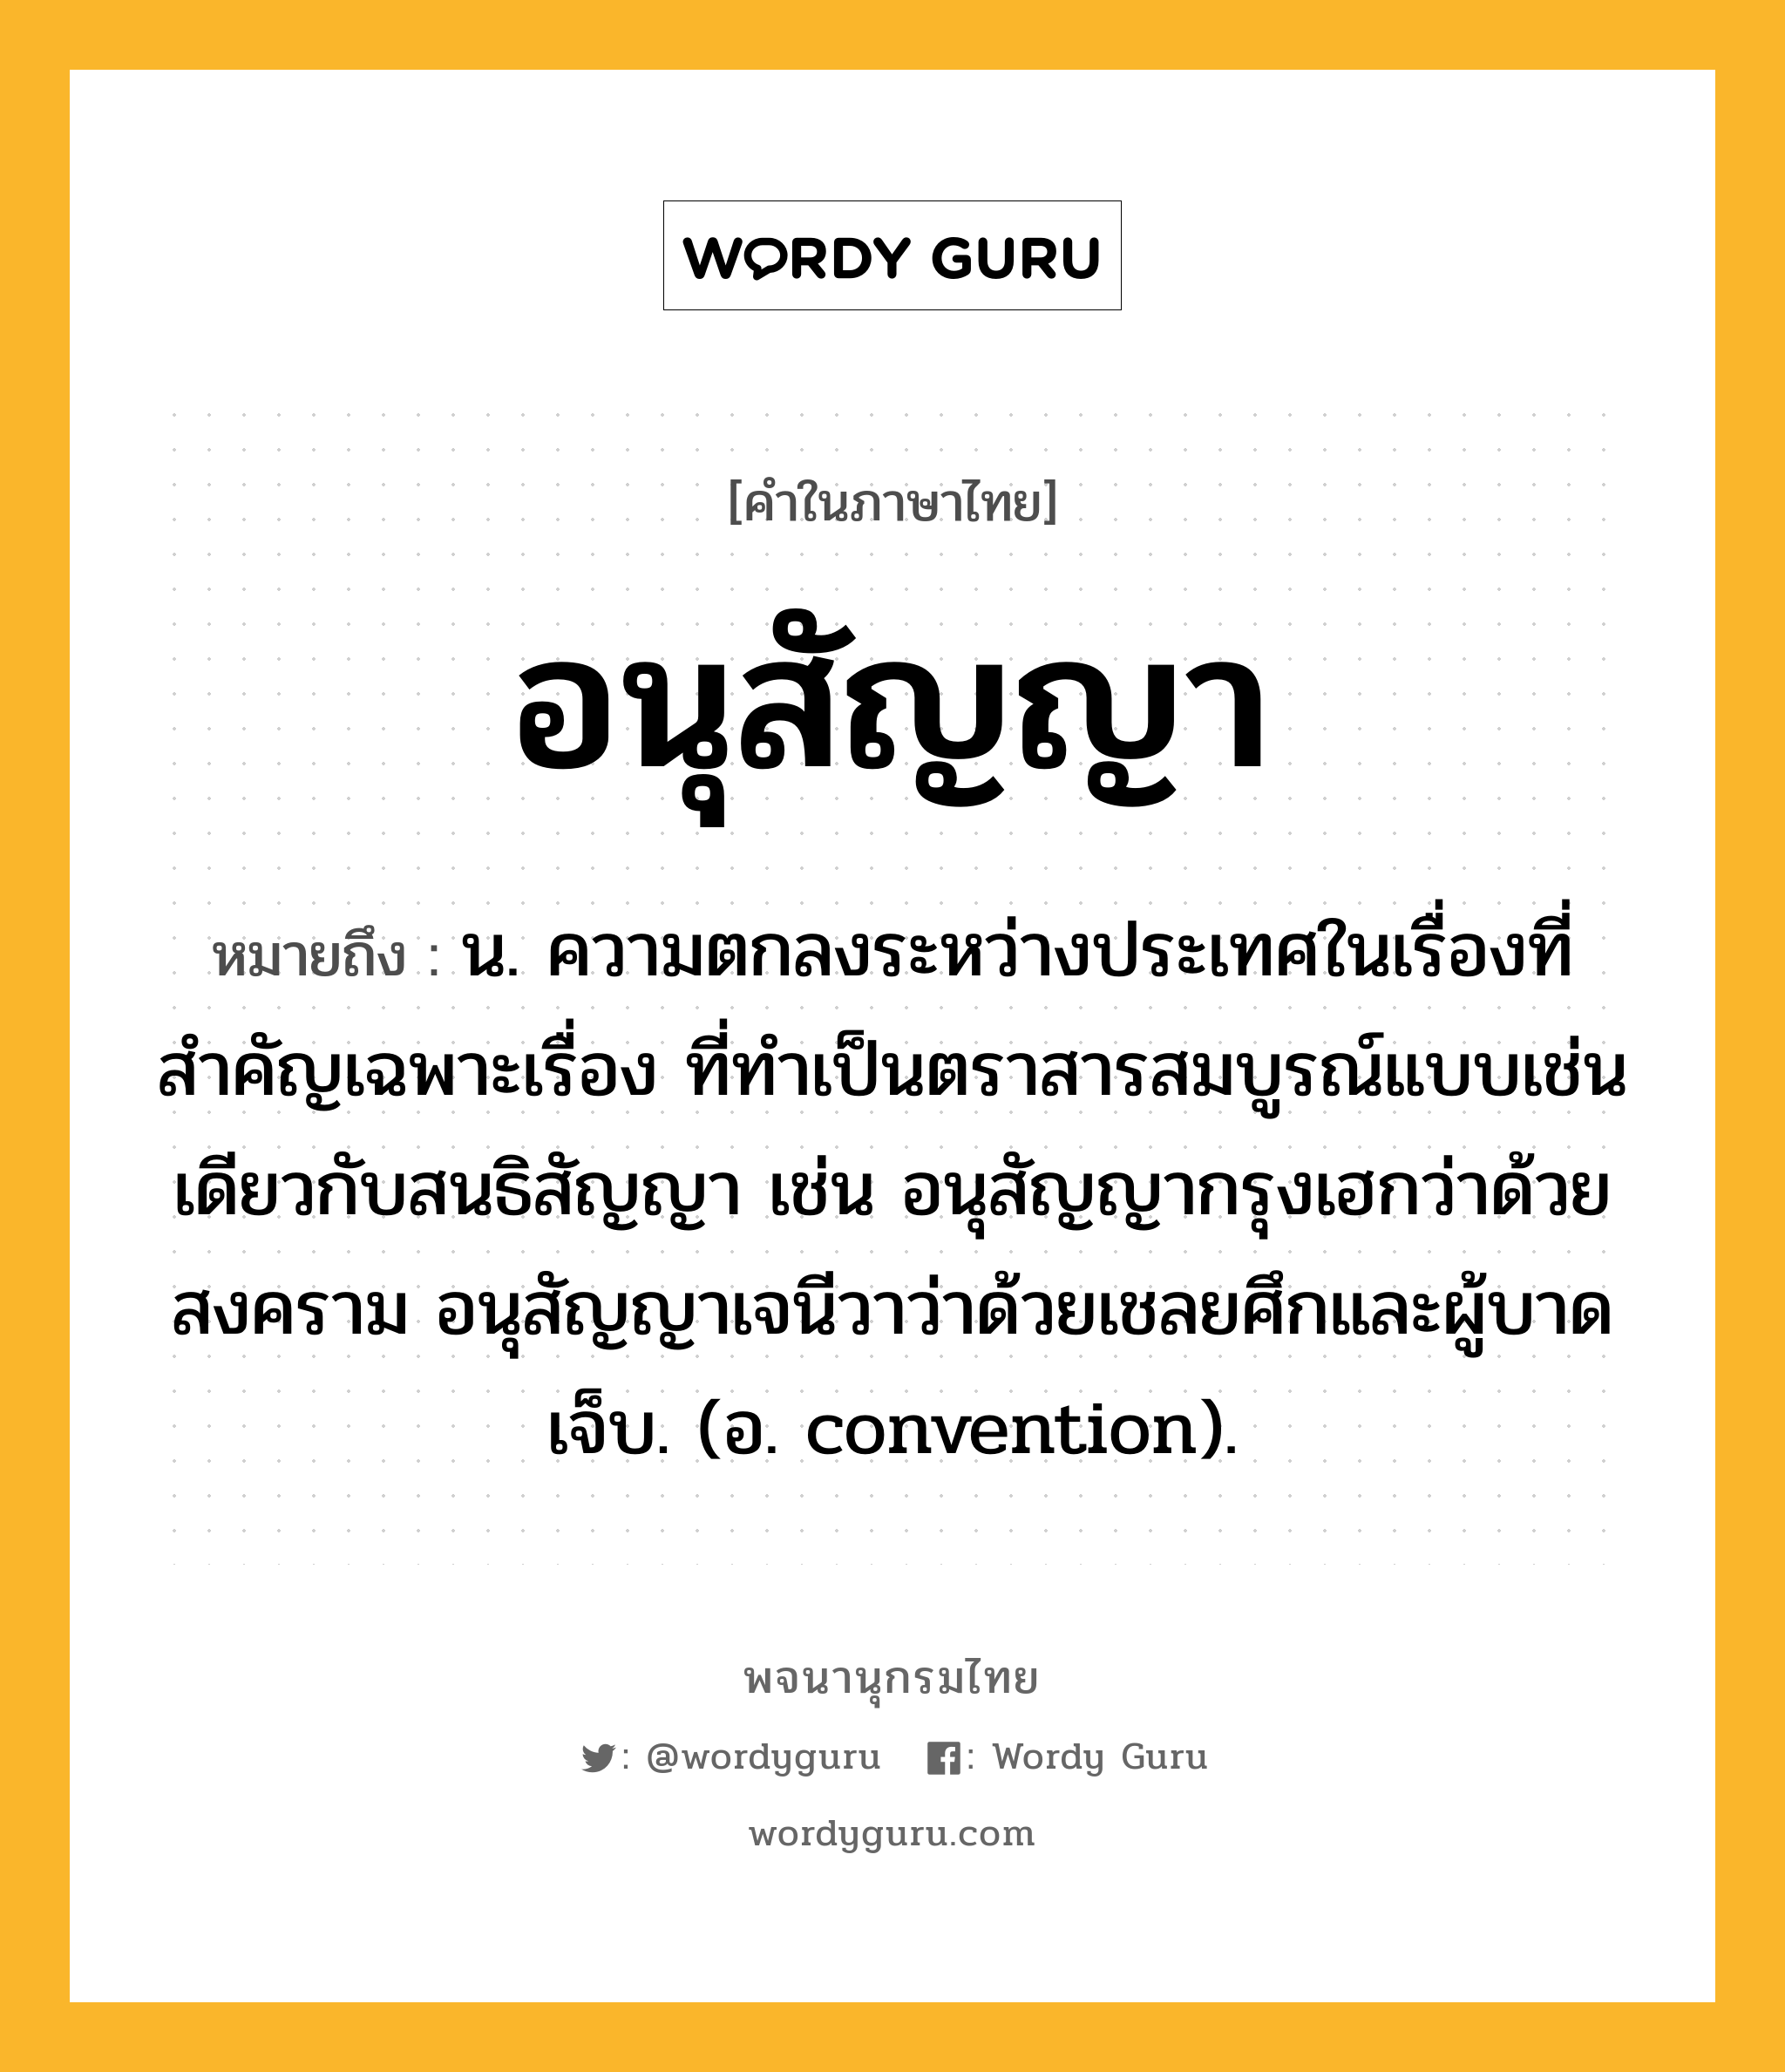 อนุสัญญา หมายถึงอะไร?, คำในภาษาไทย อนุสัญญา หมายถึง น. ความตกลงระหว่างประเทศในเรื่องที่สําคัญเฉพาะเรื่อง ที่ทําเป็นตราสารสมบูรณ์แบบเช่นเดียวกับสนธิสัญญา เช่น อนุสัญญากรุงเฮกว่าด้วยสงคราม อนุสัญญาเจนีวาว่าด้วยเชลยศึกและผู้บาดเจ็บ. (อ. convention).